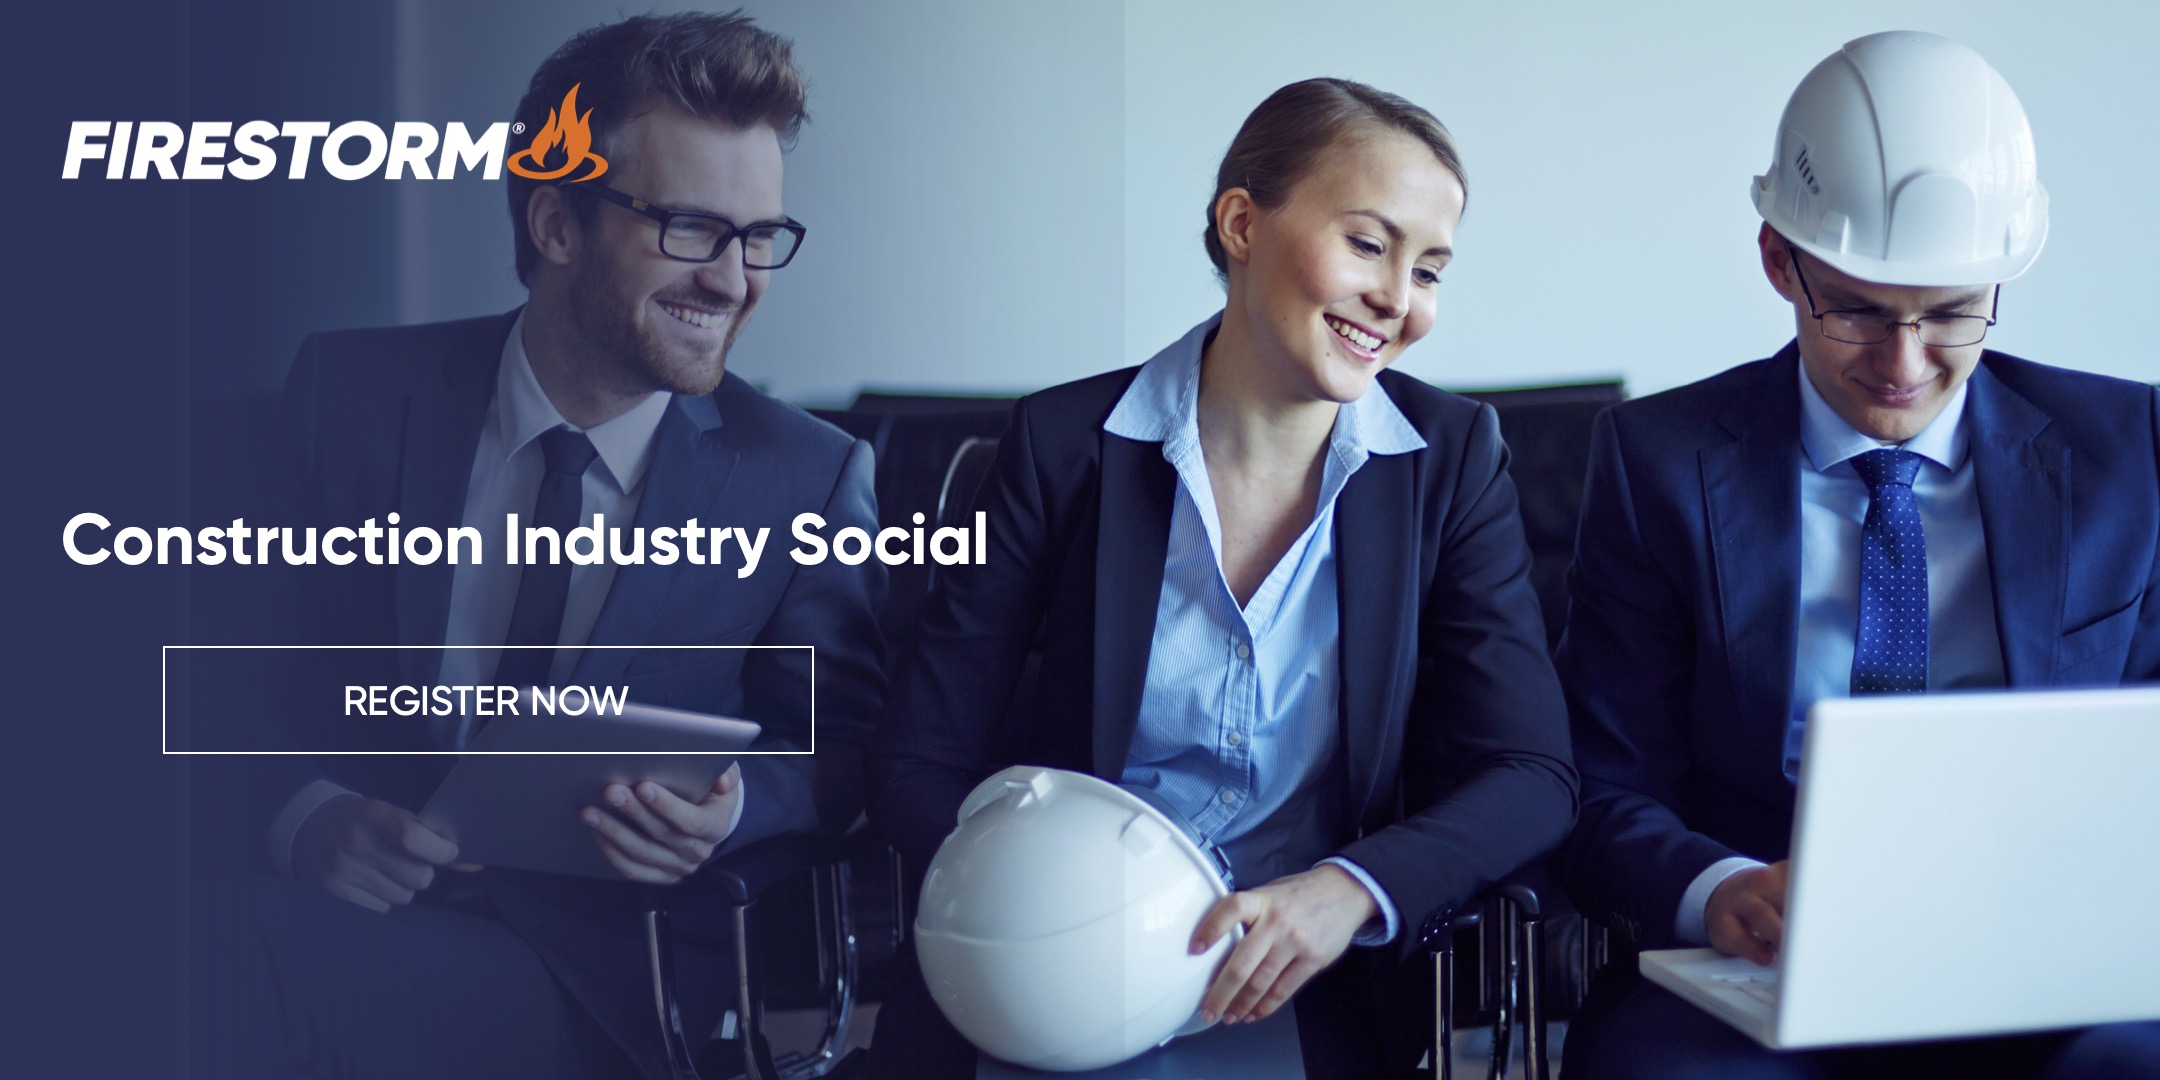 Firestorm® B2B Construction Industry Social